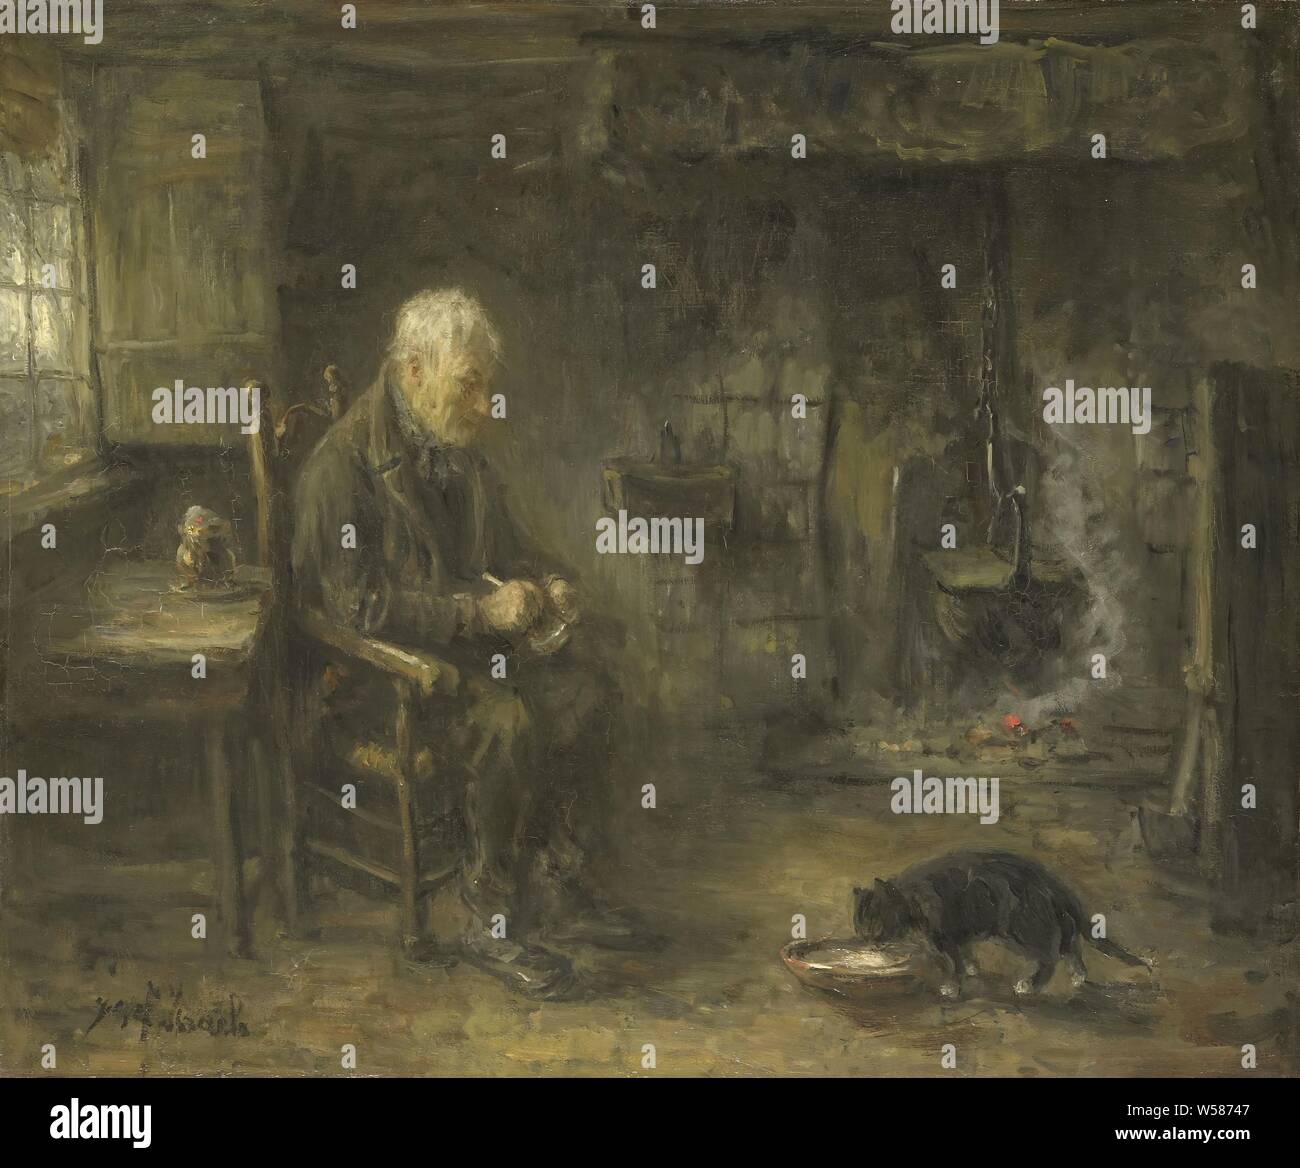 Intérieur d'une cabane de paysan, de l'intérieur d'une ferme. Un vieux paysan s'assoit sur une chaise près d'une table, s'arrête un tuyau et regarde comme un chat mange à partir d'un bol. Dans le mur du fond un pot est suspendu au-dessus d'un feu couvant dans l'âtre., Jozef Israels, ch. 1882, la toile, la peinture à l'huile (peinture), H 60 cm × w 72 cm d 11,5 cm Banque D'Images